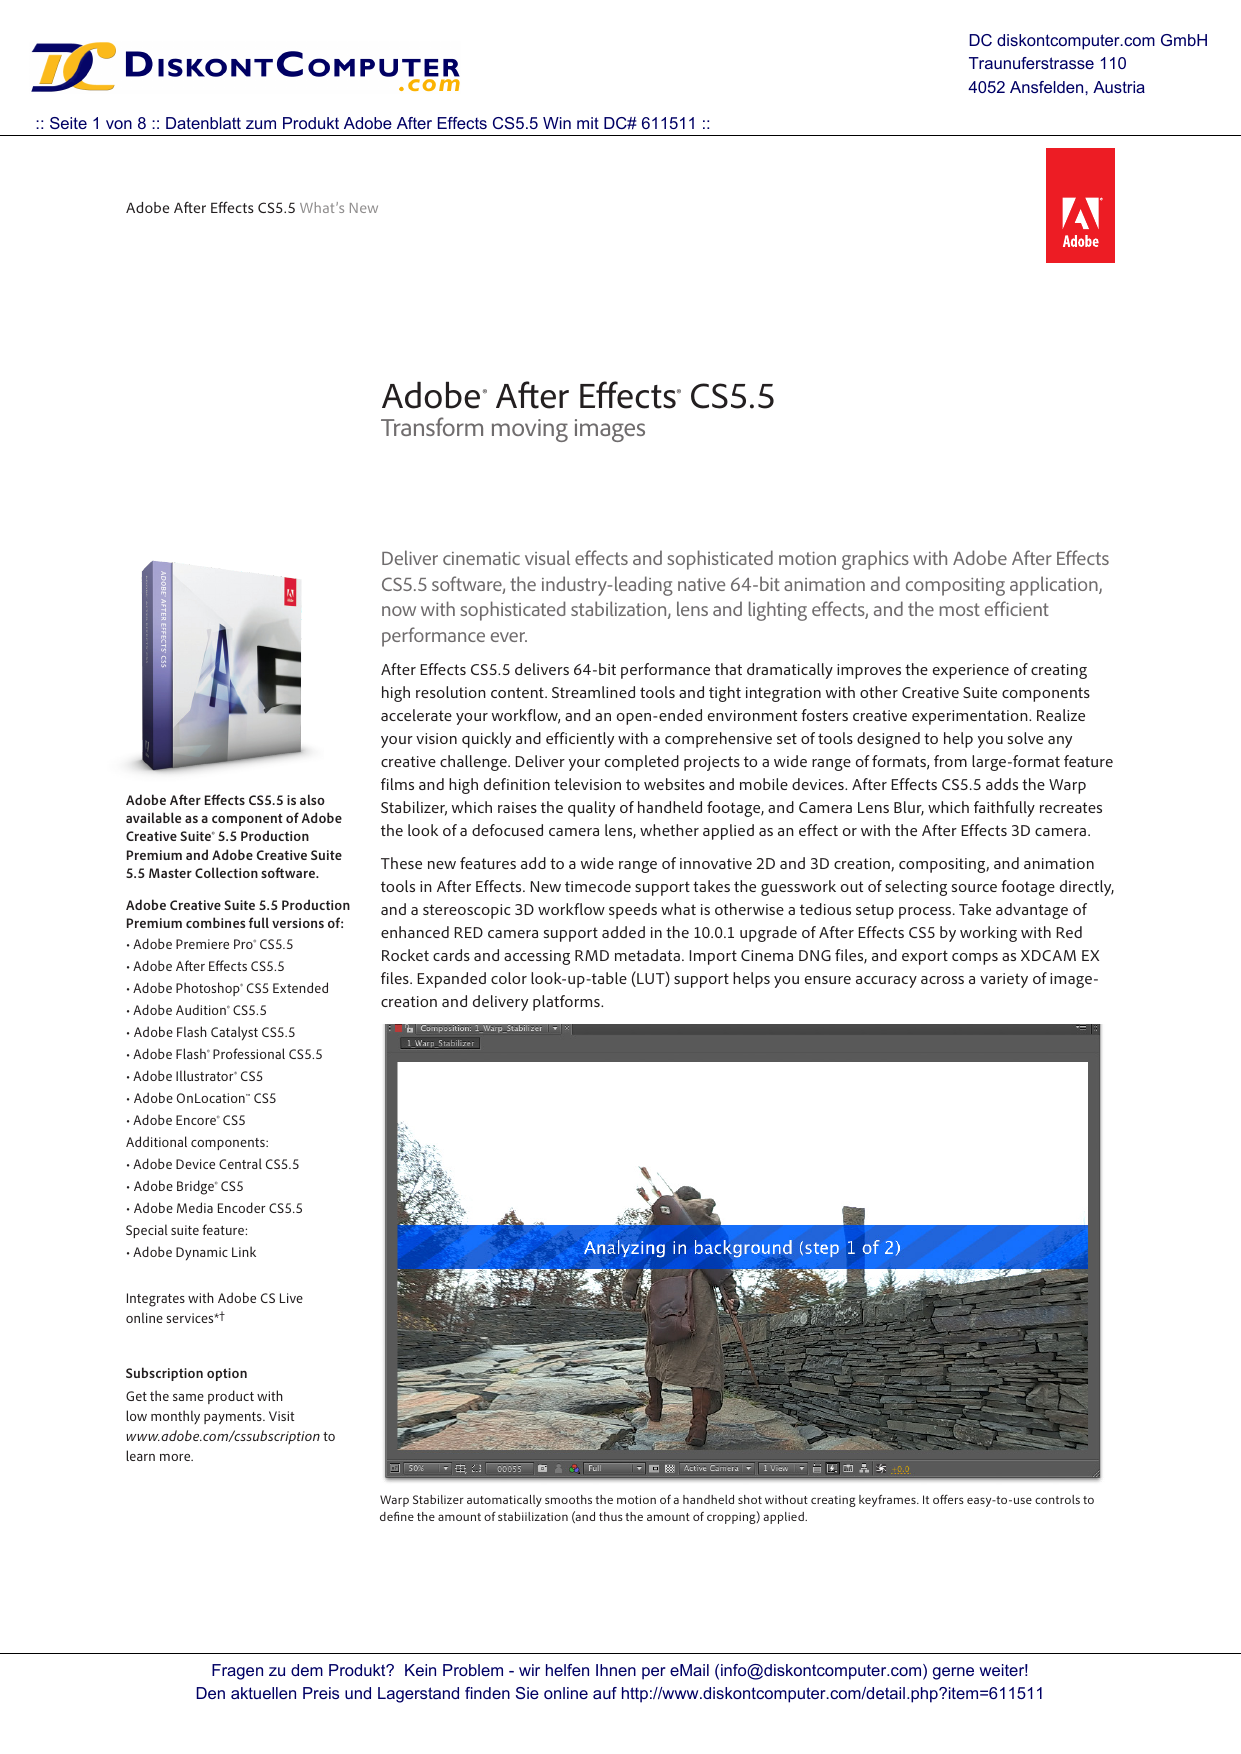 adobe after effect cs5 32-bit